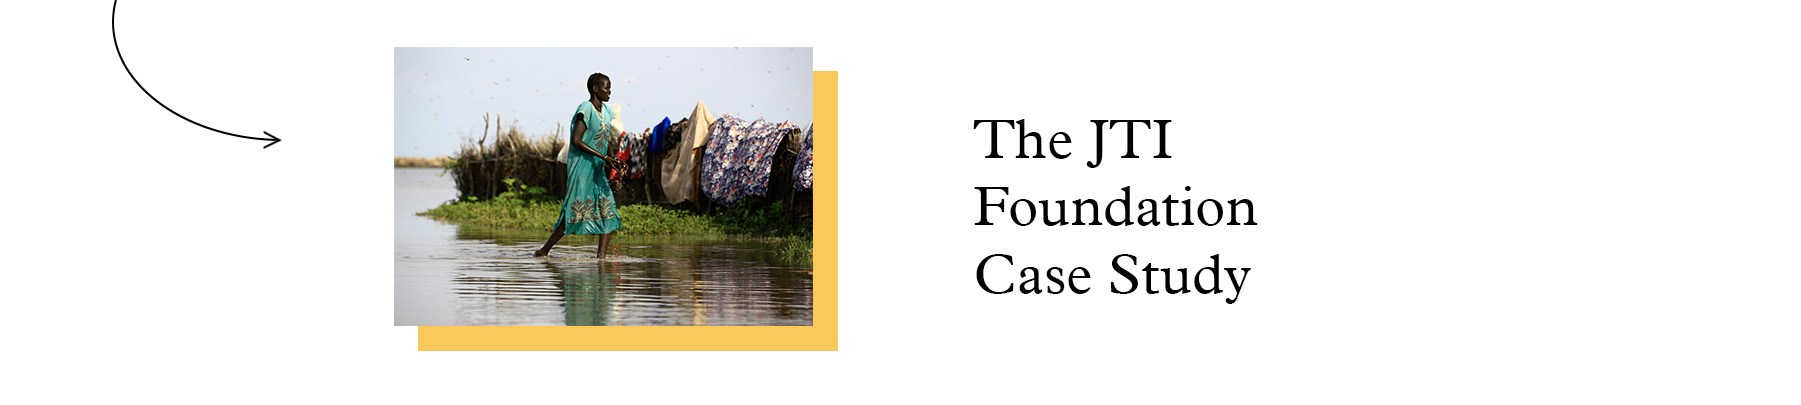 Strategic Alignment Case Study - The JTI Foundation